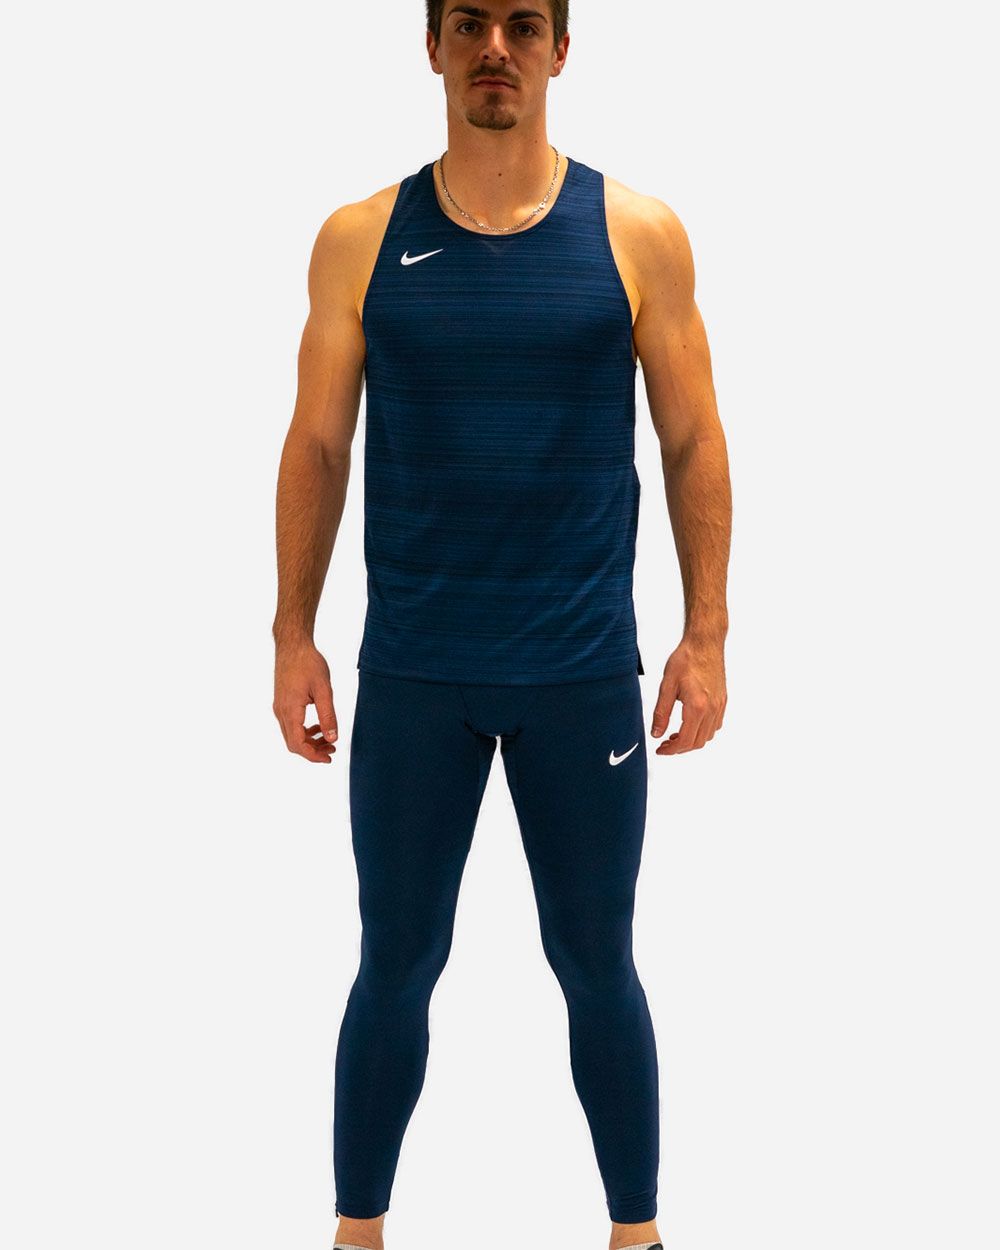 Débardeur de Running Bleu Homme Nike Miler